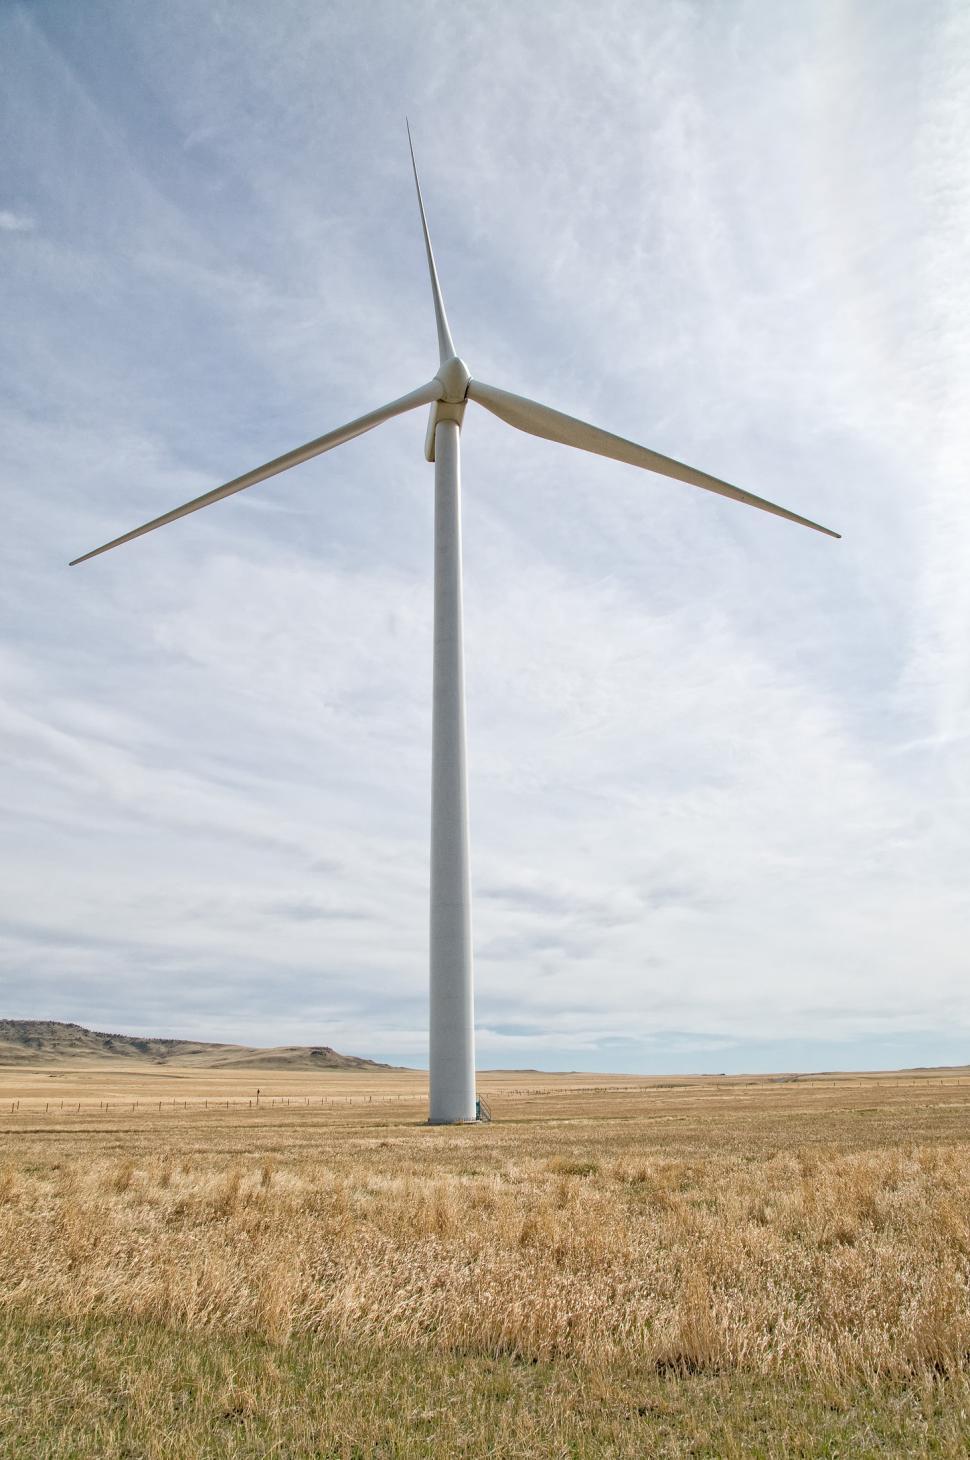 Free Image of Wind Turbine 